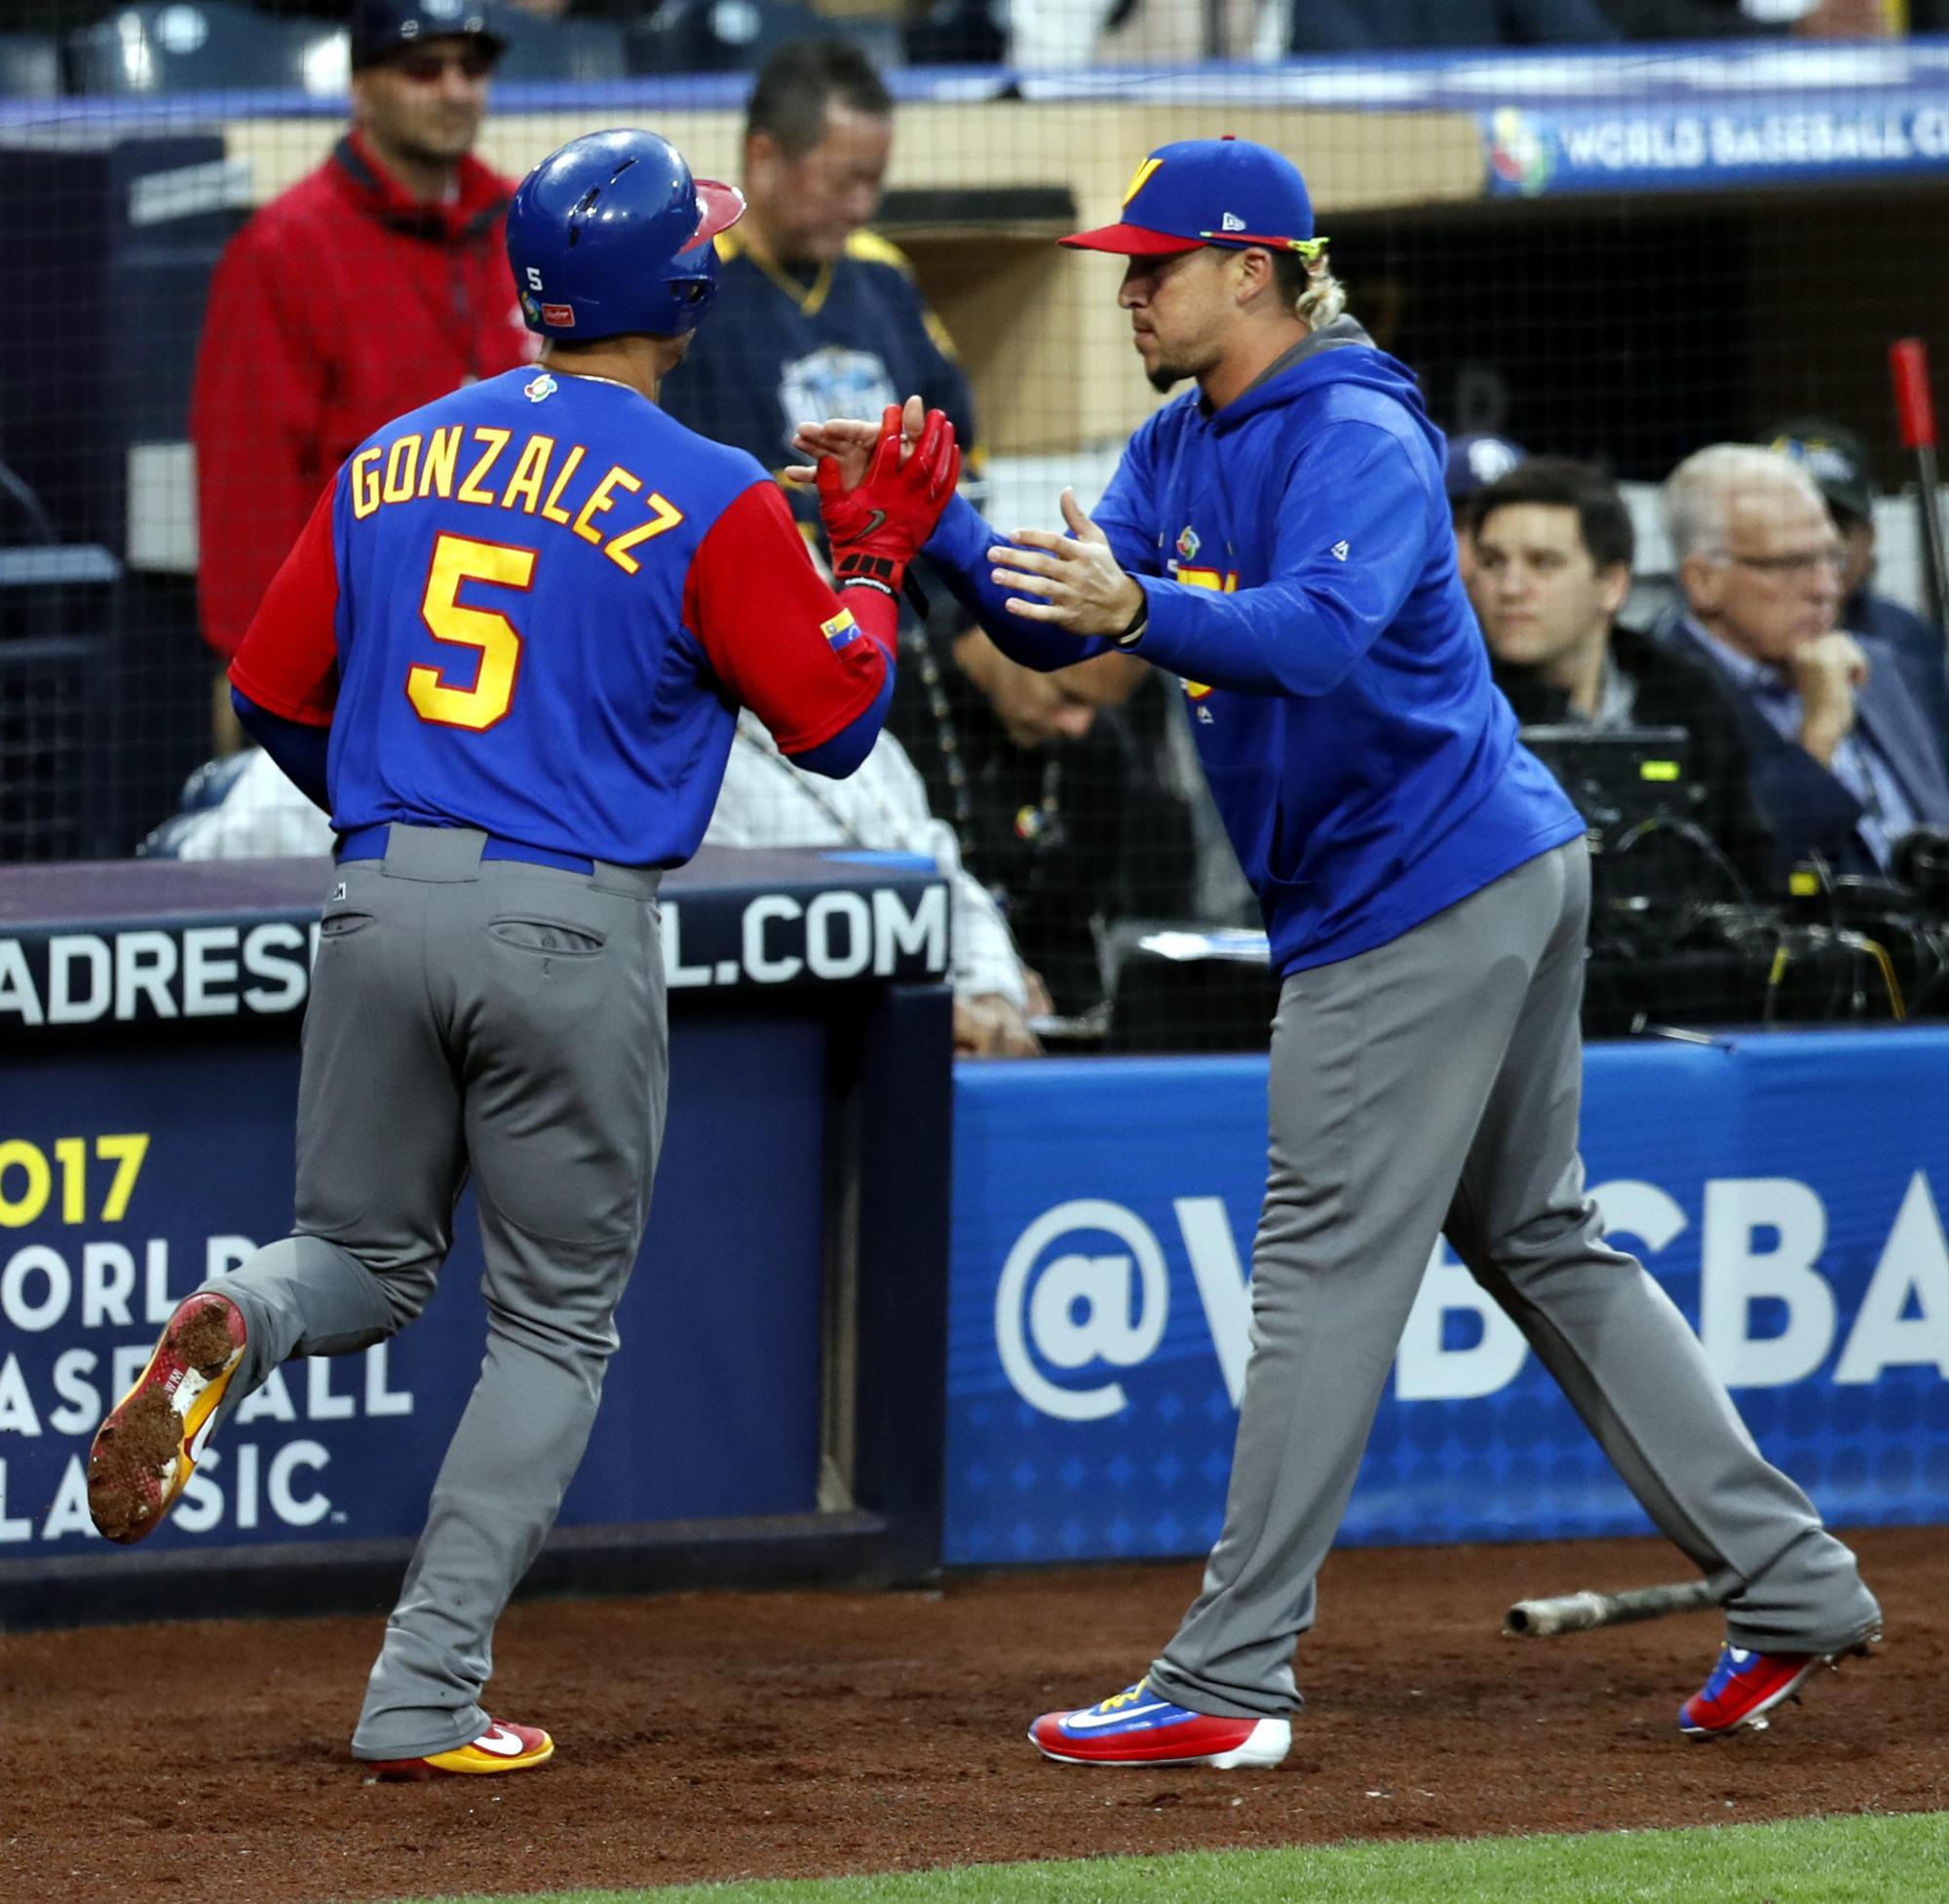 El venezolano Carlos González celebra tras anotar una carrera hoy, miércoles 15 de marzo de 2017, durante un partido entre Estados Unidos y Venezuela por el Clásico Mundial de Béisbol, en San Diego, California.